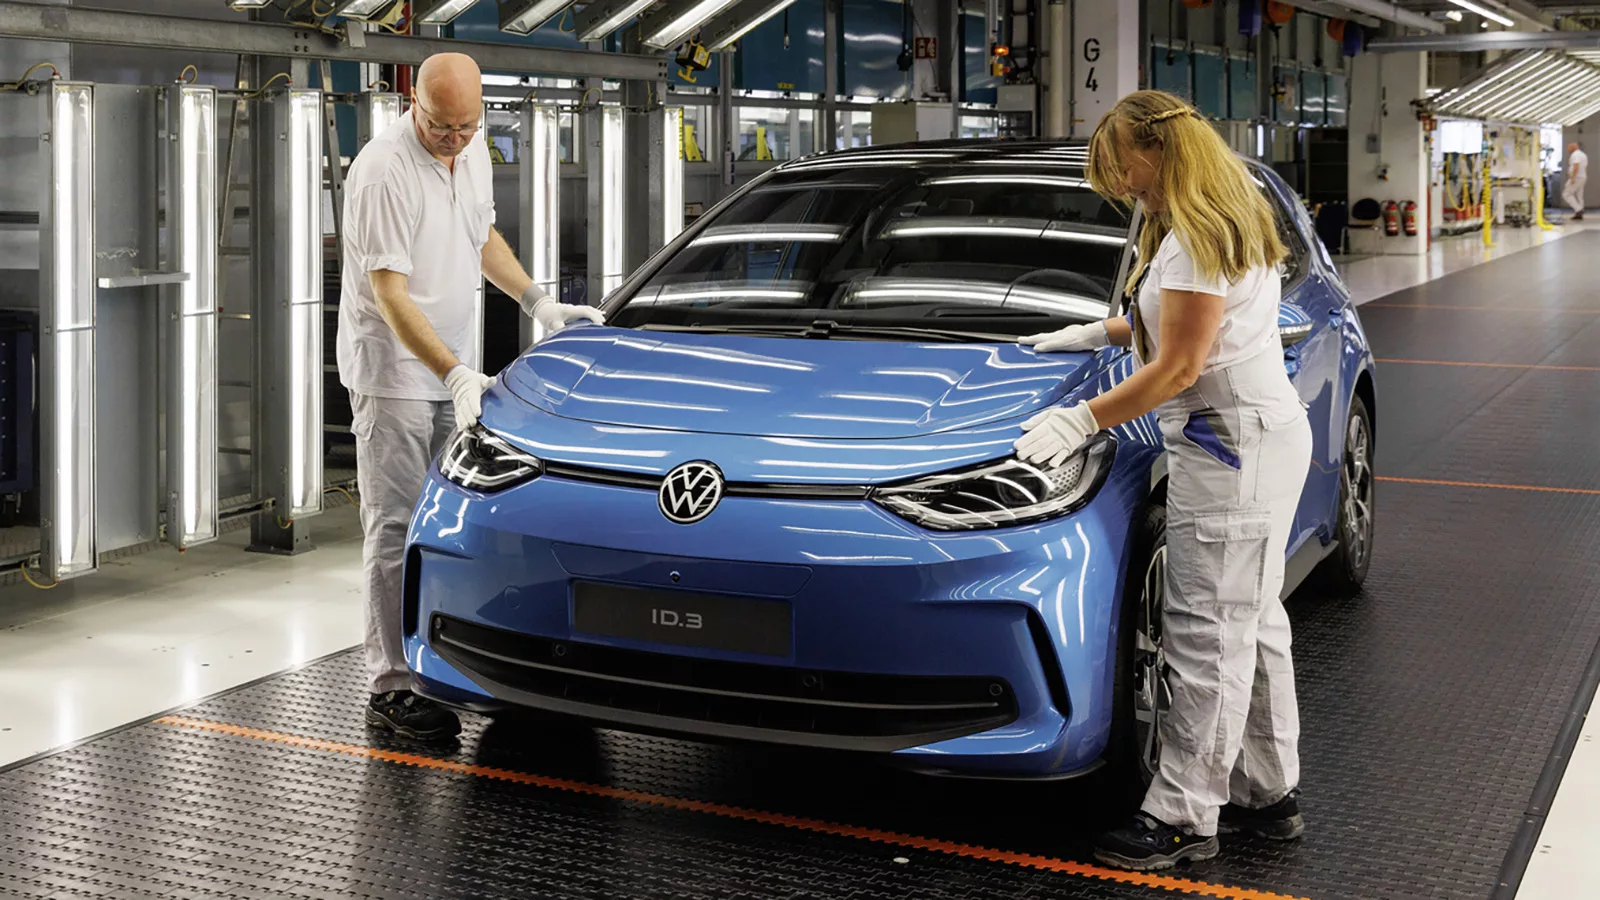 Efterfrågan på elbilar rasar – VW tvingas stoppa tillverkning | Carup.se